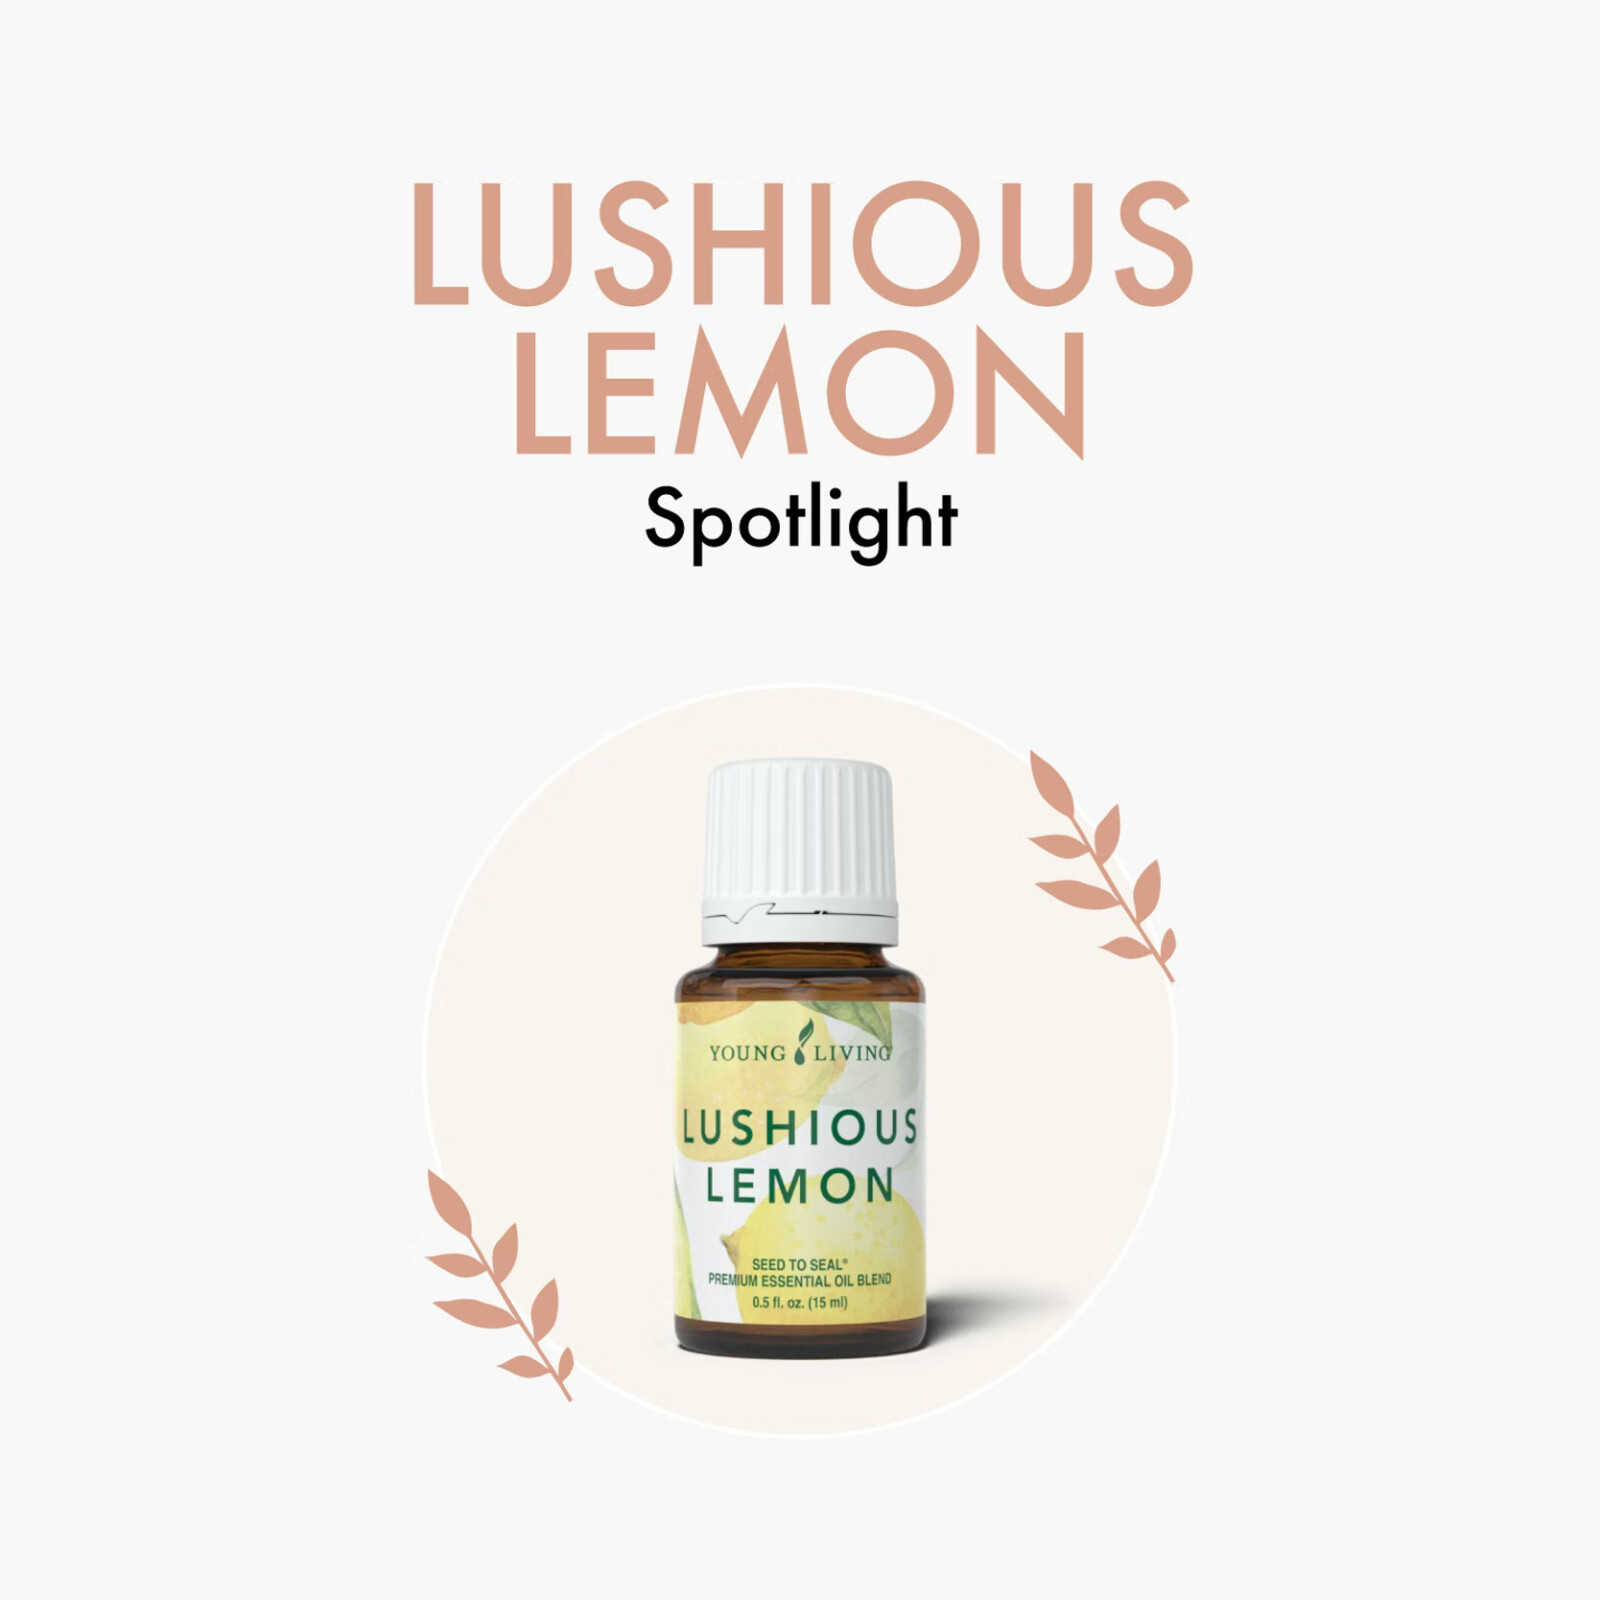 Lushious Lemon Spotlight